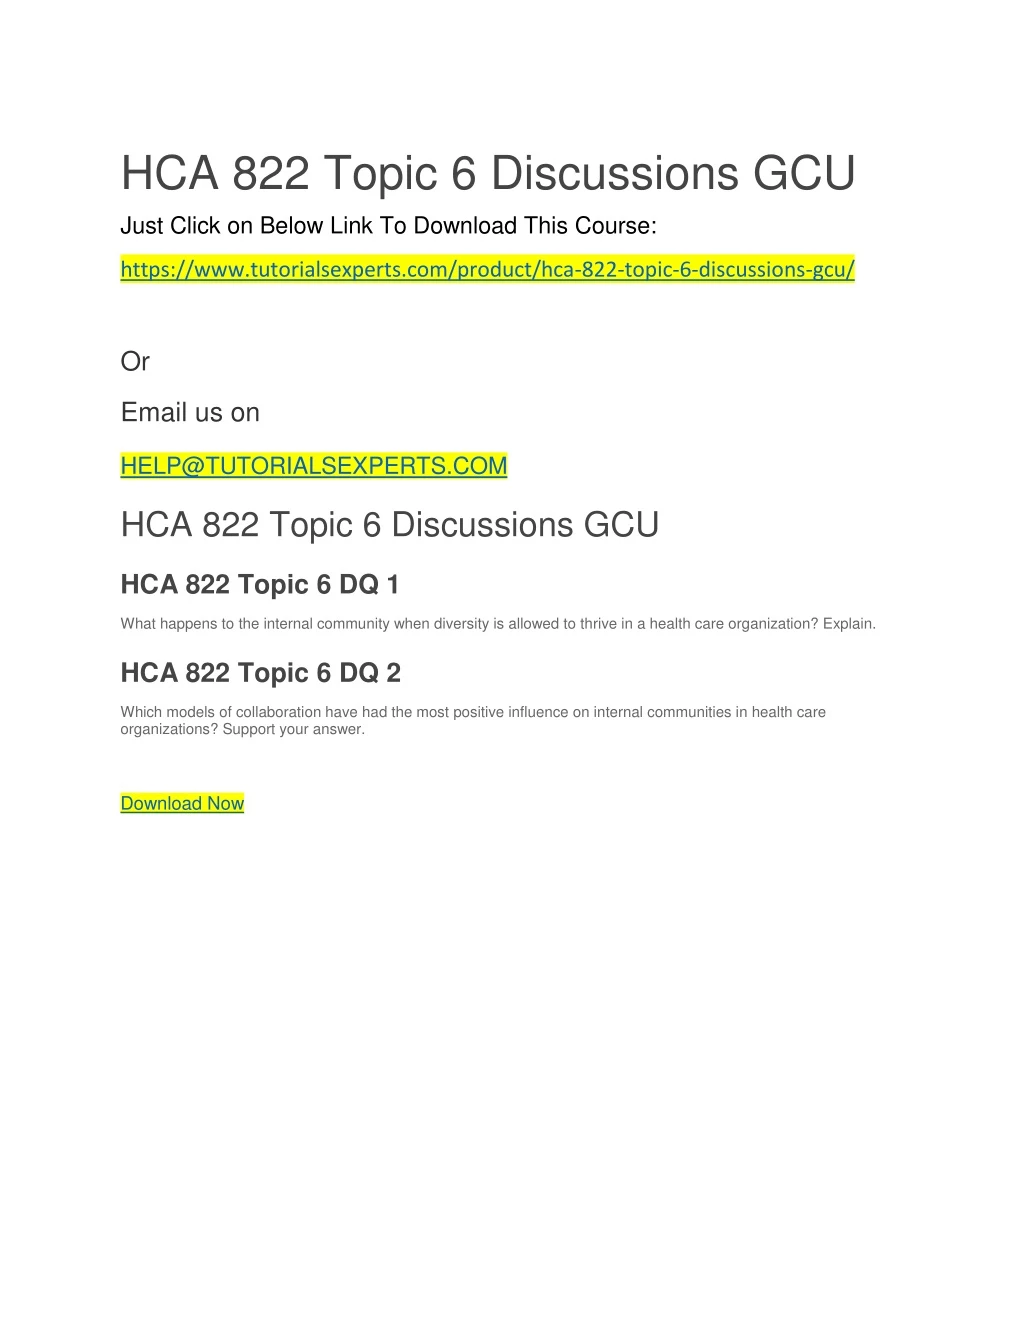 hca 822 topic 6 discussions gcu just click